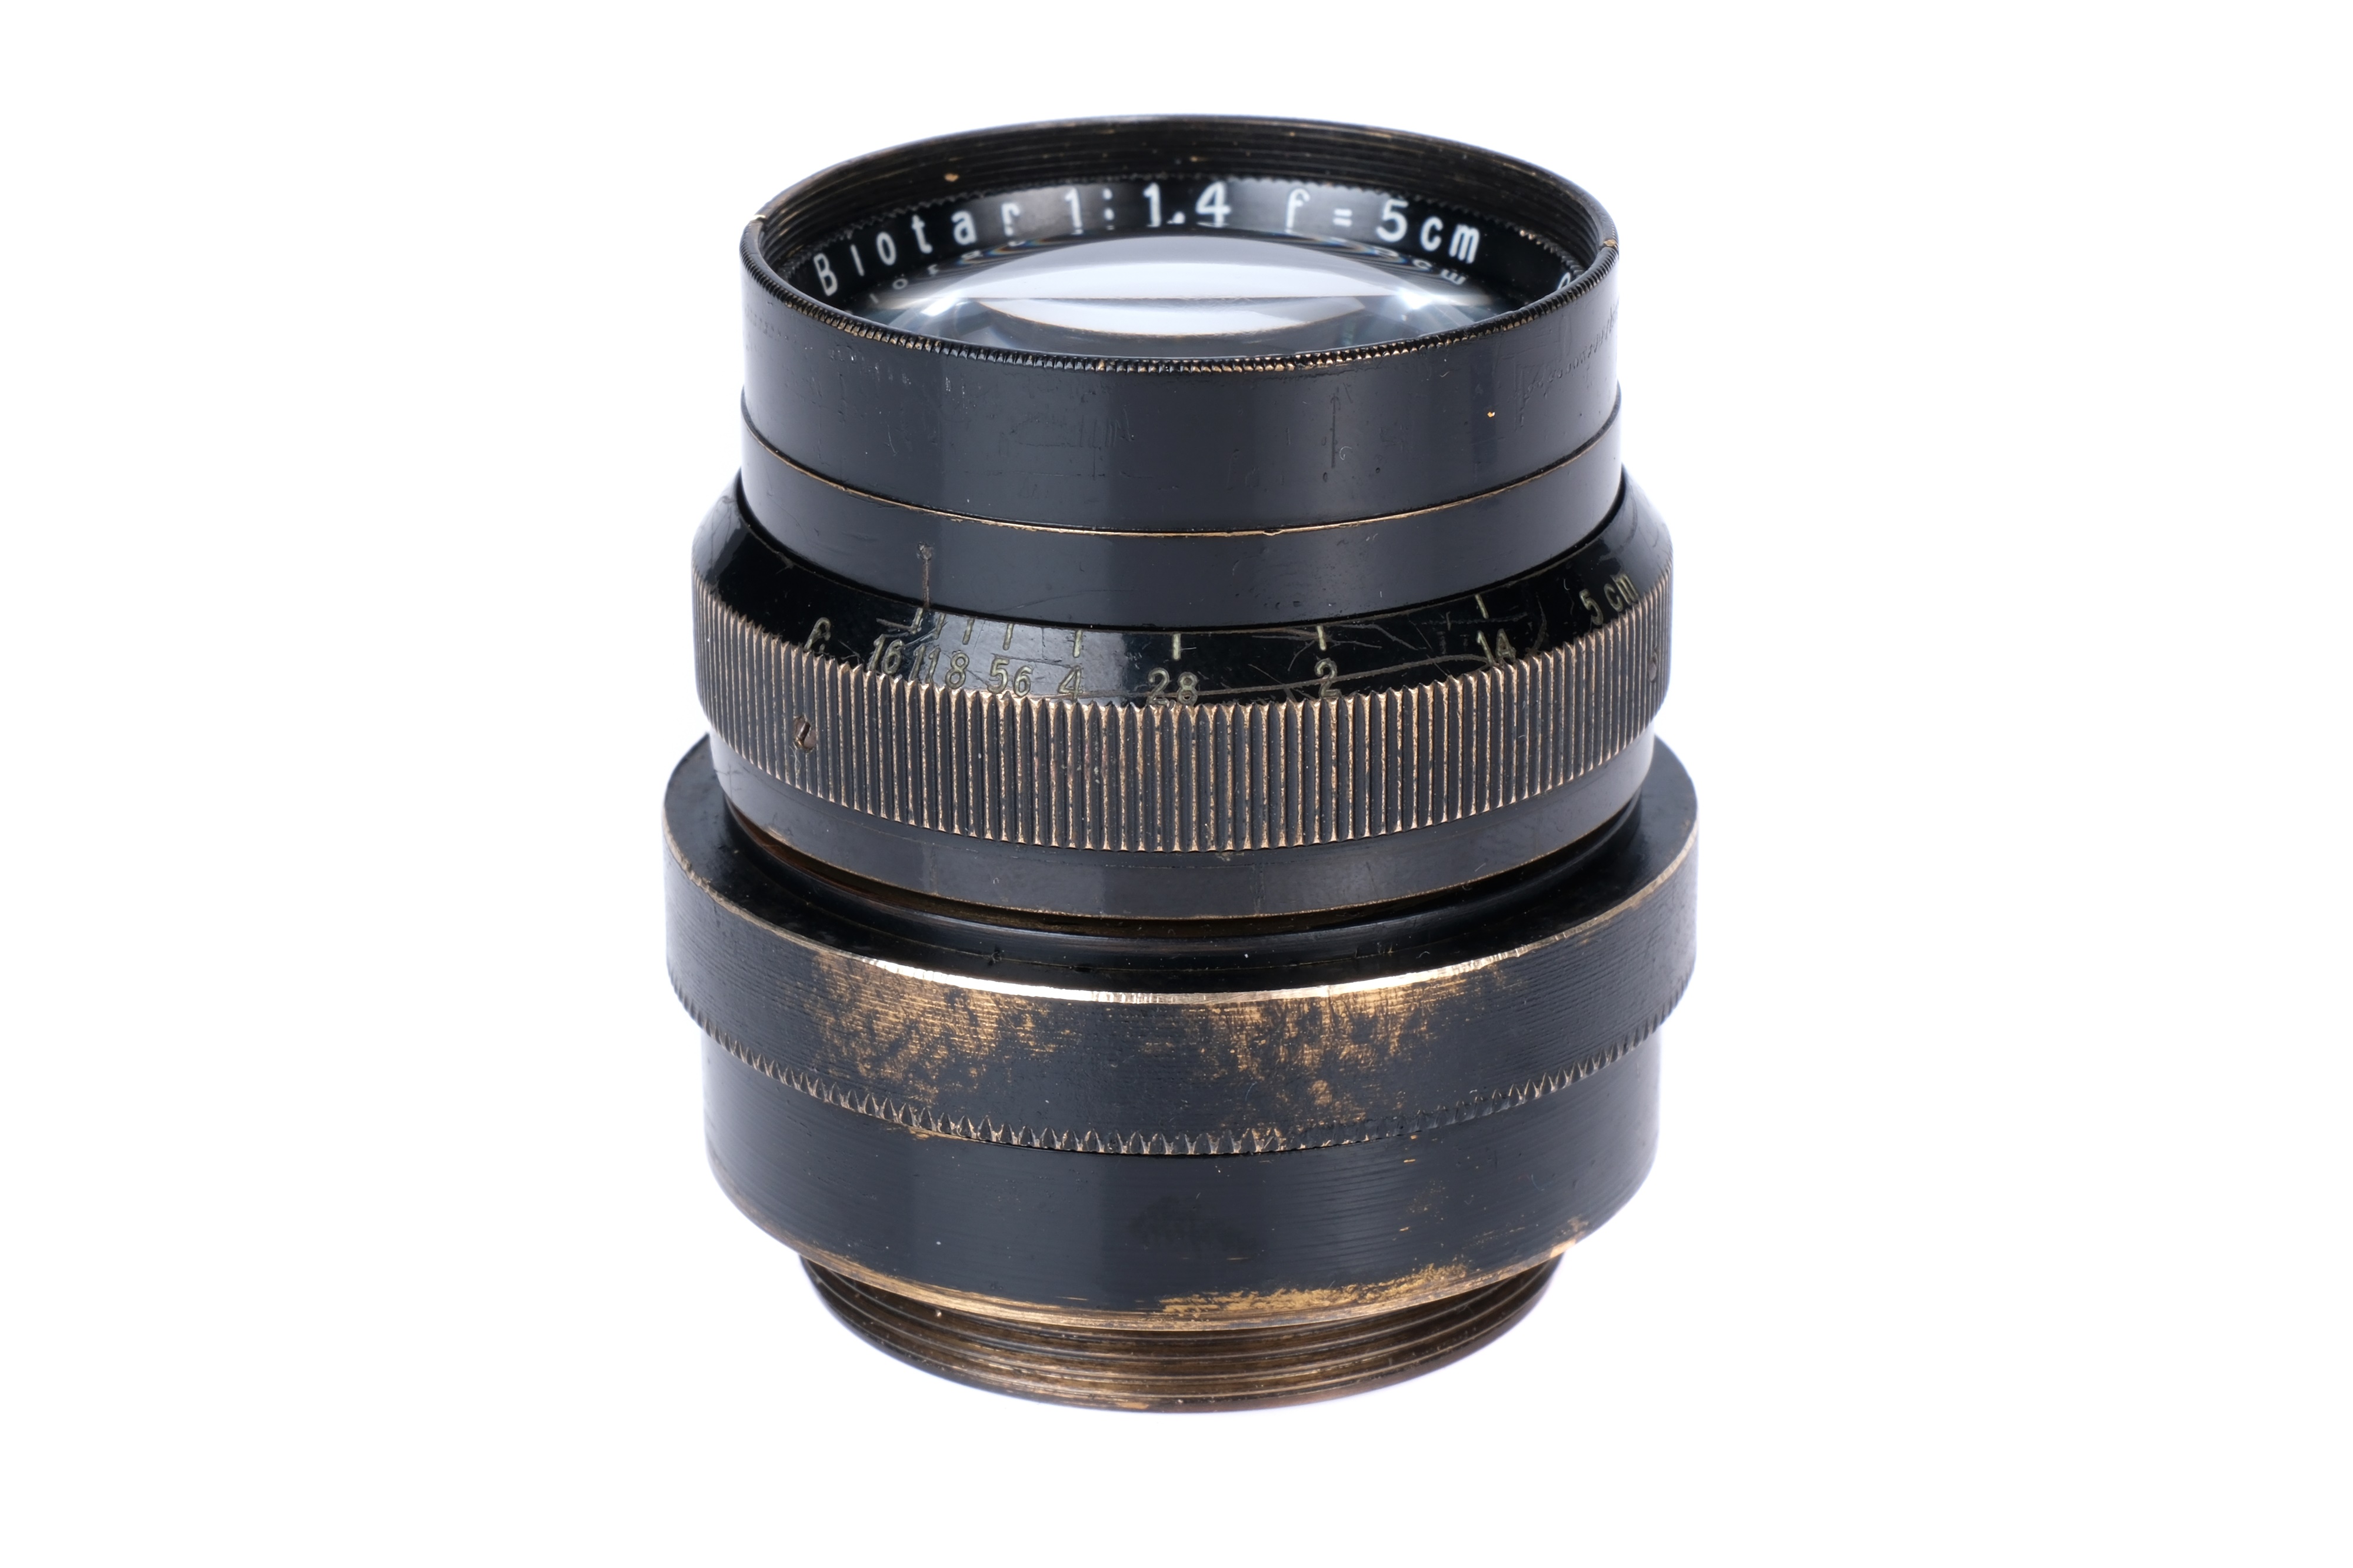 A Carl Zeiss Jena Biotar f/1.4 50mm Lens,